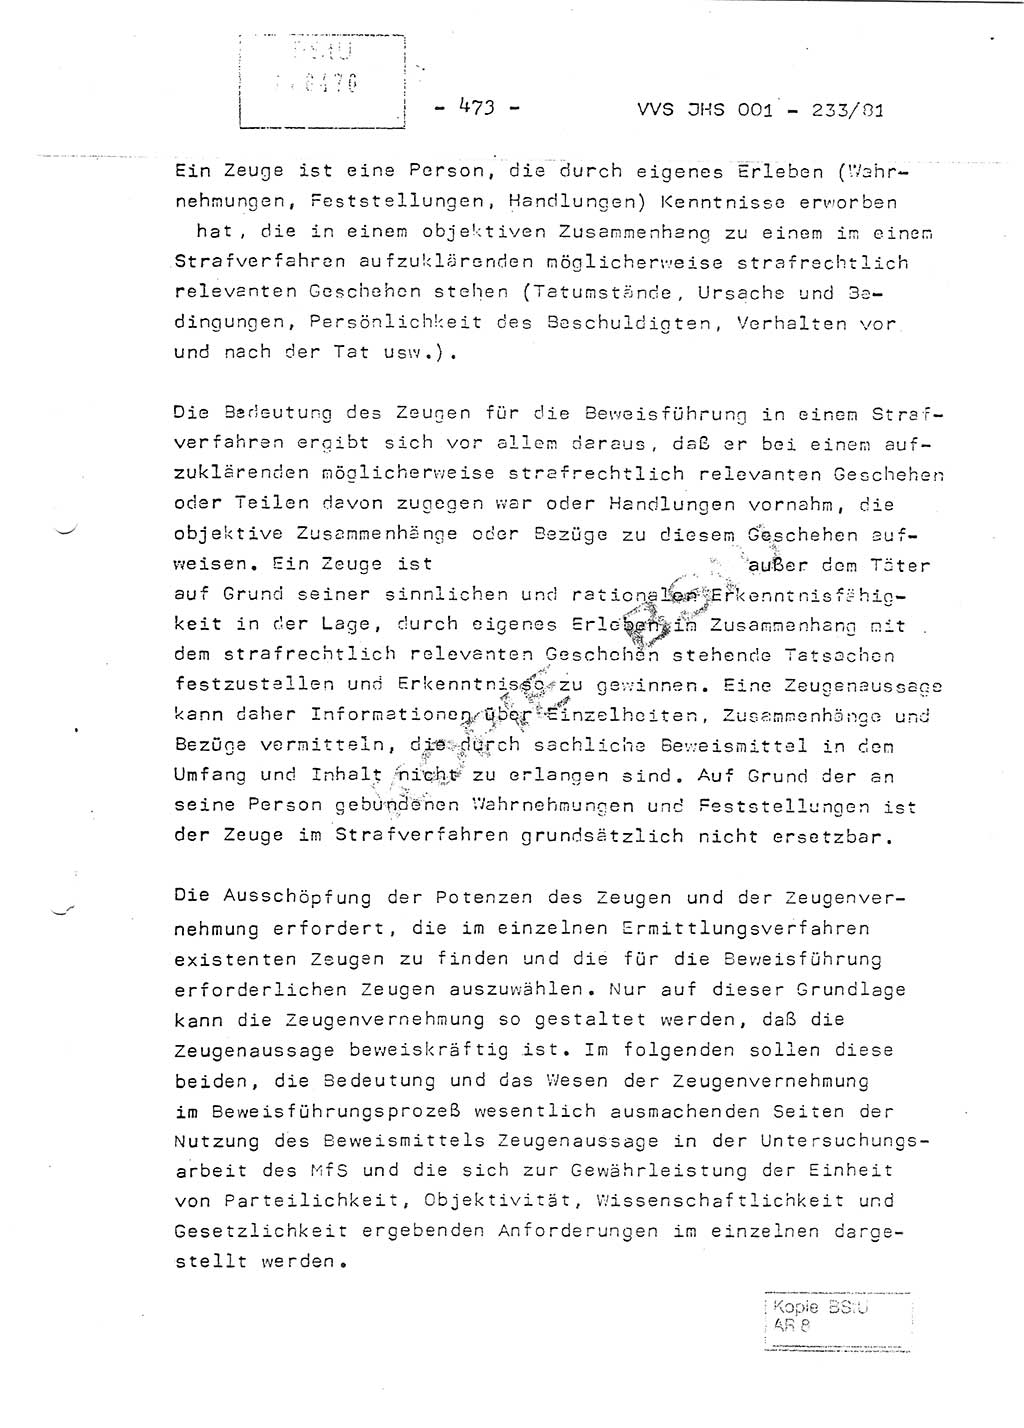 Dissertation Oberstleutnant Horst Zank (JHS), Oberstleutnant Dr. Karl-Heinz Knoblauch (JHS), Oberstleutnant Gustav-Adolf Kowalewski (HA Ⅸ), Oberstleutnant Wolfgang Plötner (HA Ⅸ), Ministerium für Staatssicherheit (MfS) [Deutsche Demokratische Republik (DDR)], Juristische Hochschule (JHS), Vertrauliche Verschlußsache (VVS) o001-233/81, Potsdam 1981, Blatt 473 (Diss. MfS DDR JHS VVS o001-233/81 1981, Bl. 473)